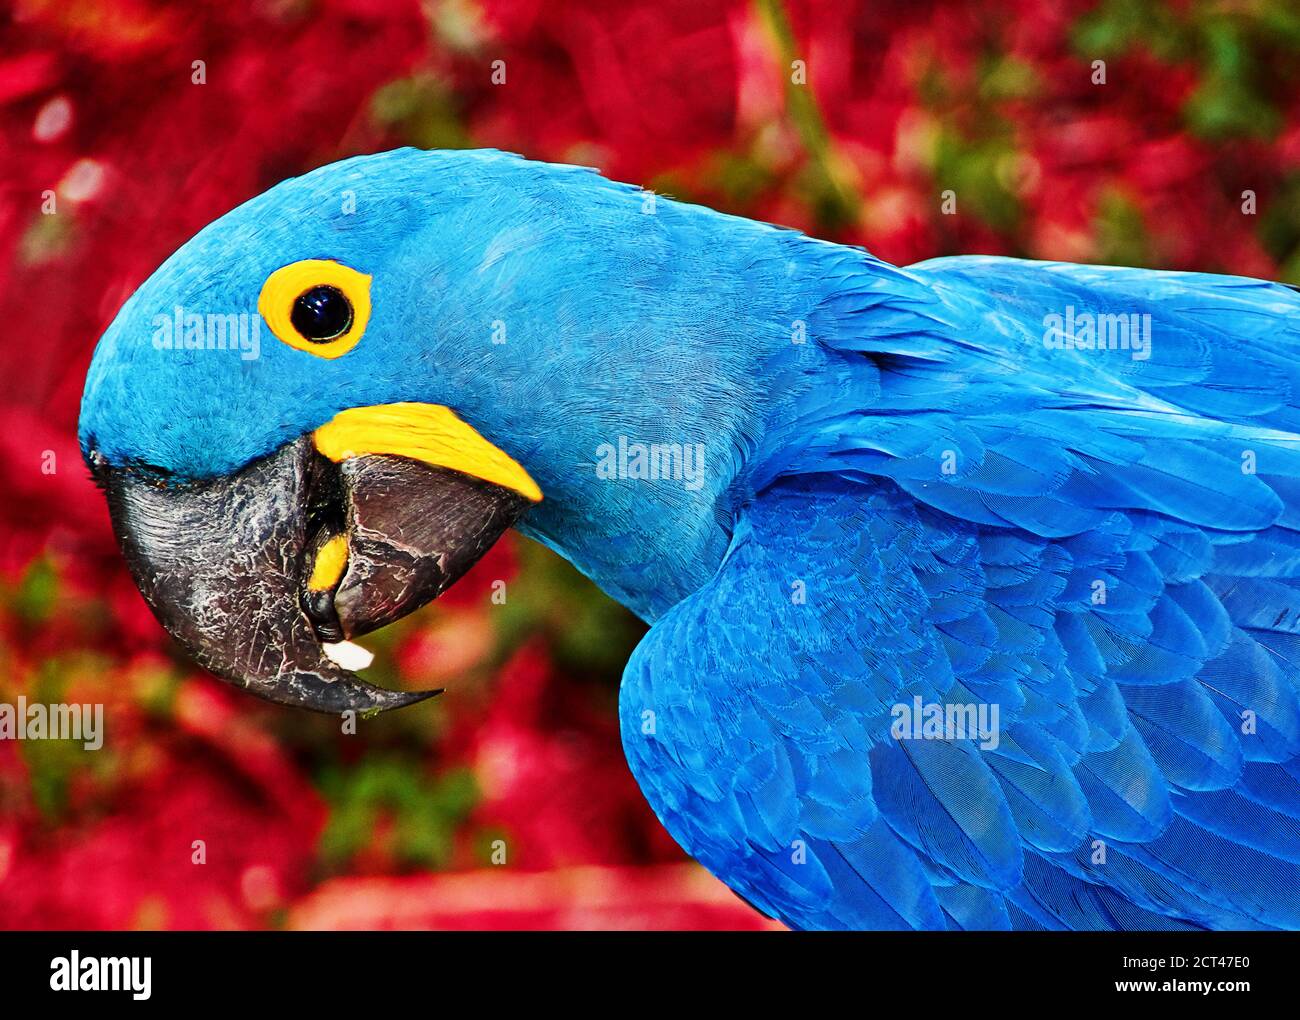 La macaw de Parrot Blue Spix est assise sur la terre ferme Banque D'Images